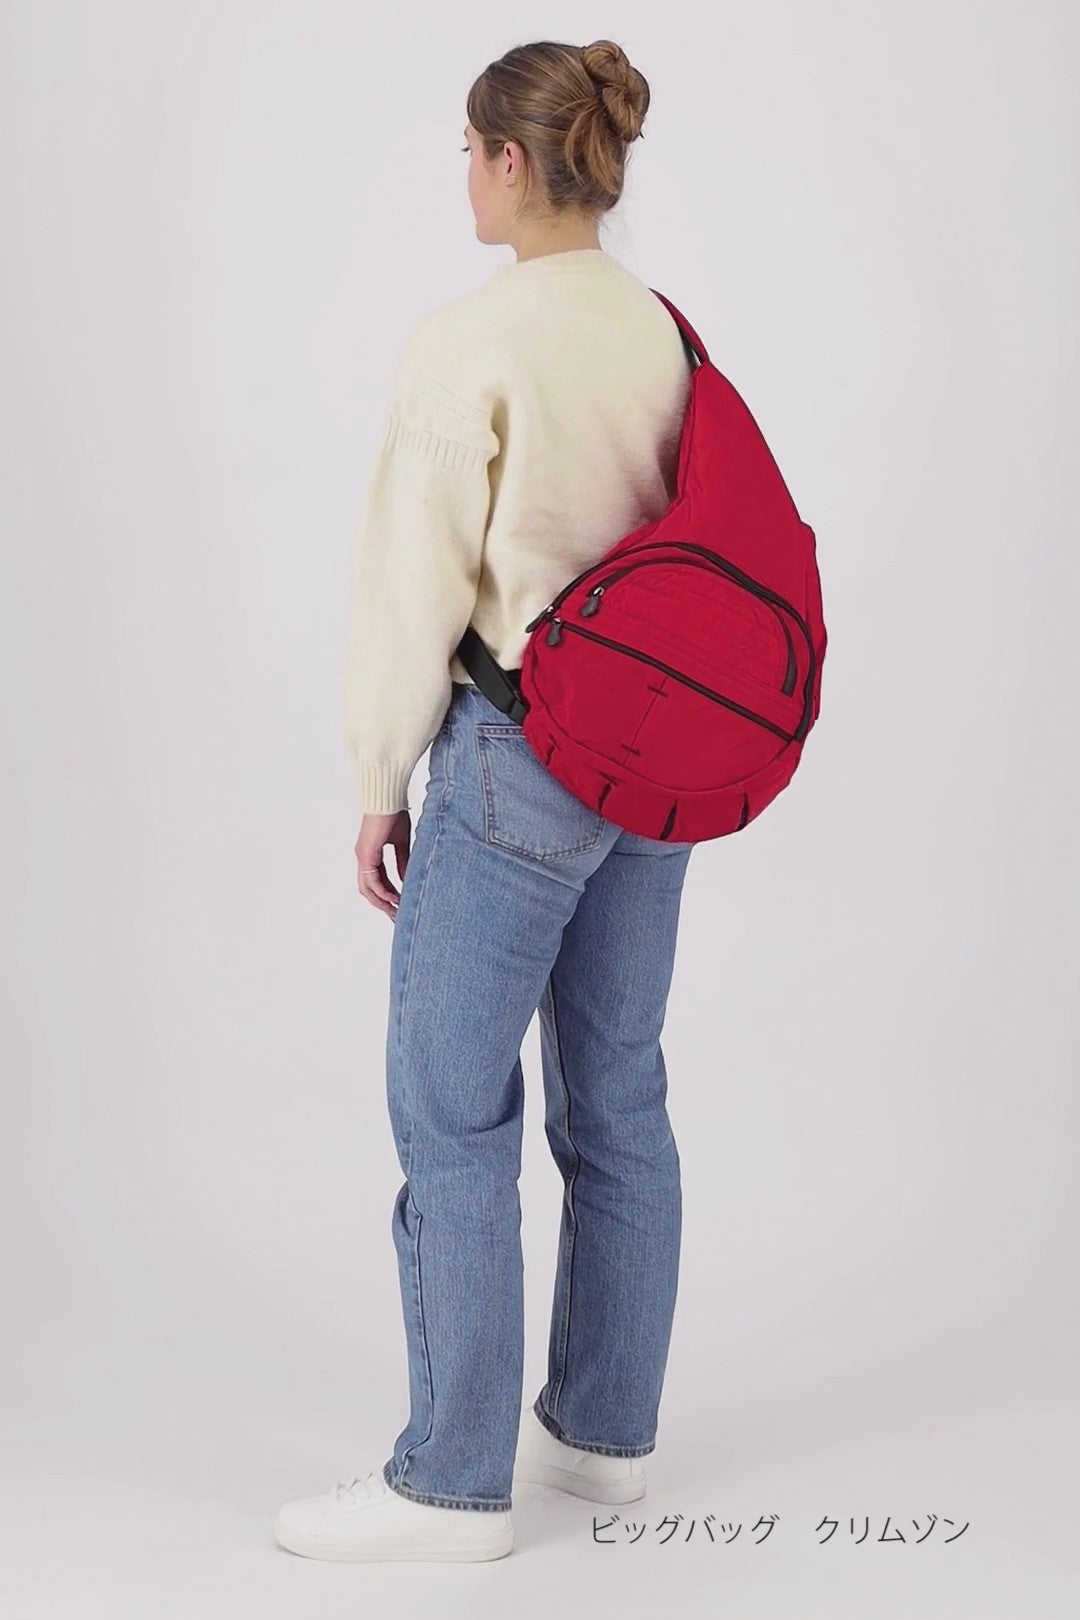 レディース【色: ピスタチオ】Healthy Back Bag バッグ ビッグバッグ 44